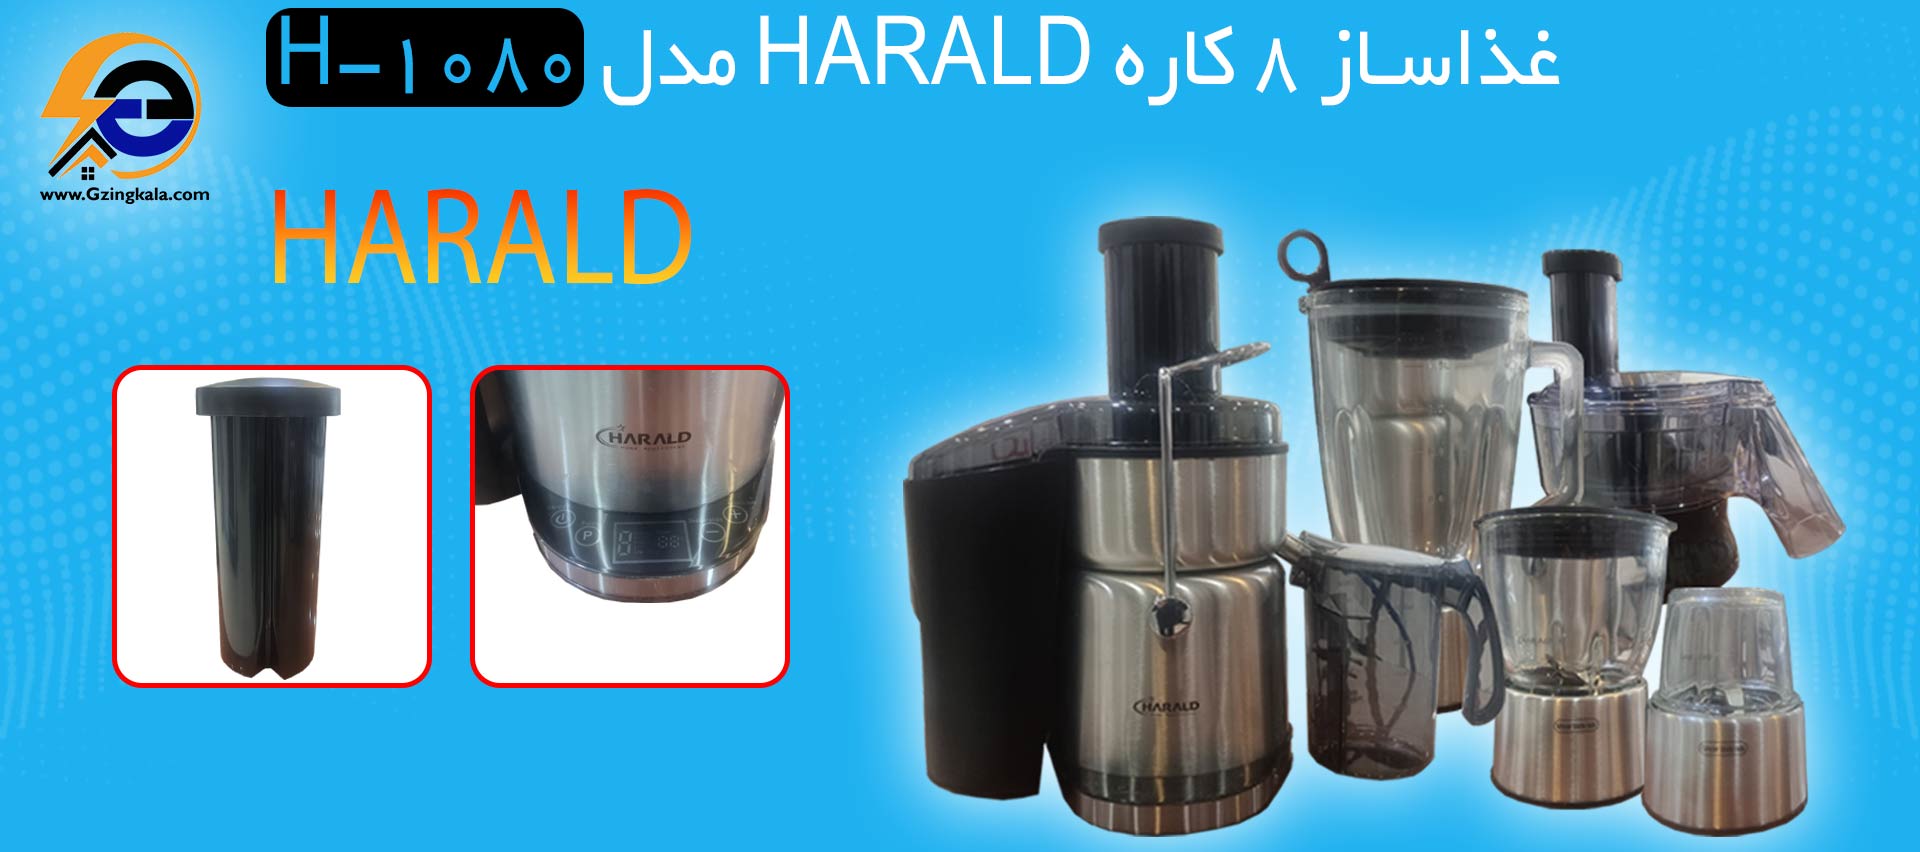 غذاساز 8 کاره HARALD مدل H-1080